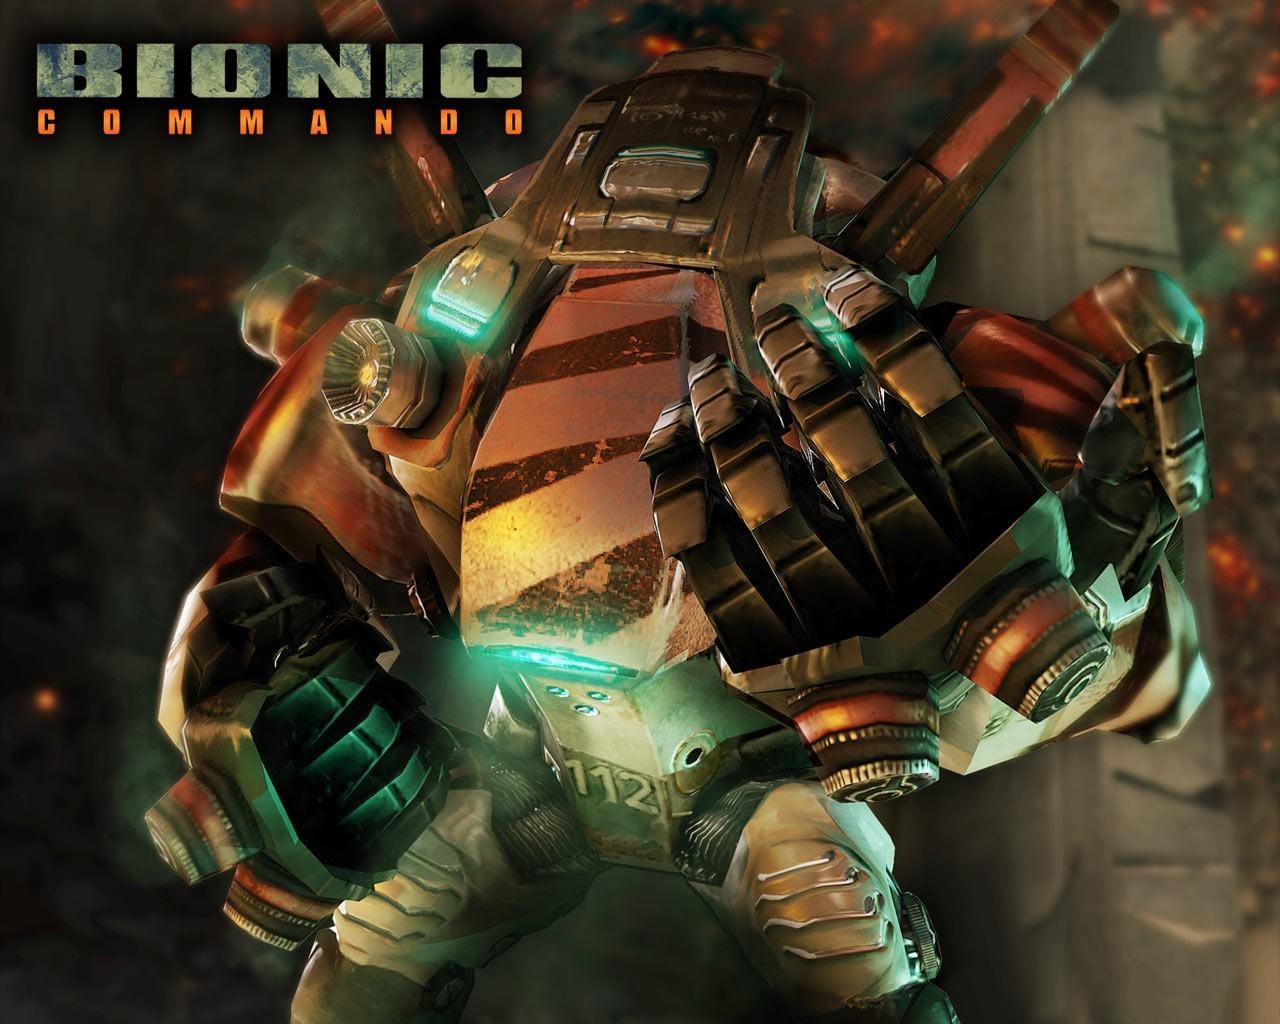 Desktop Wallpapers - Bionic Commando - Games | Free Desktop ...